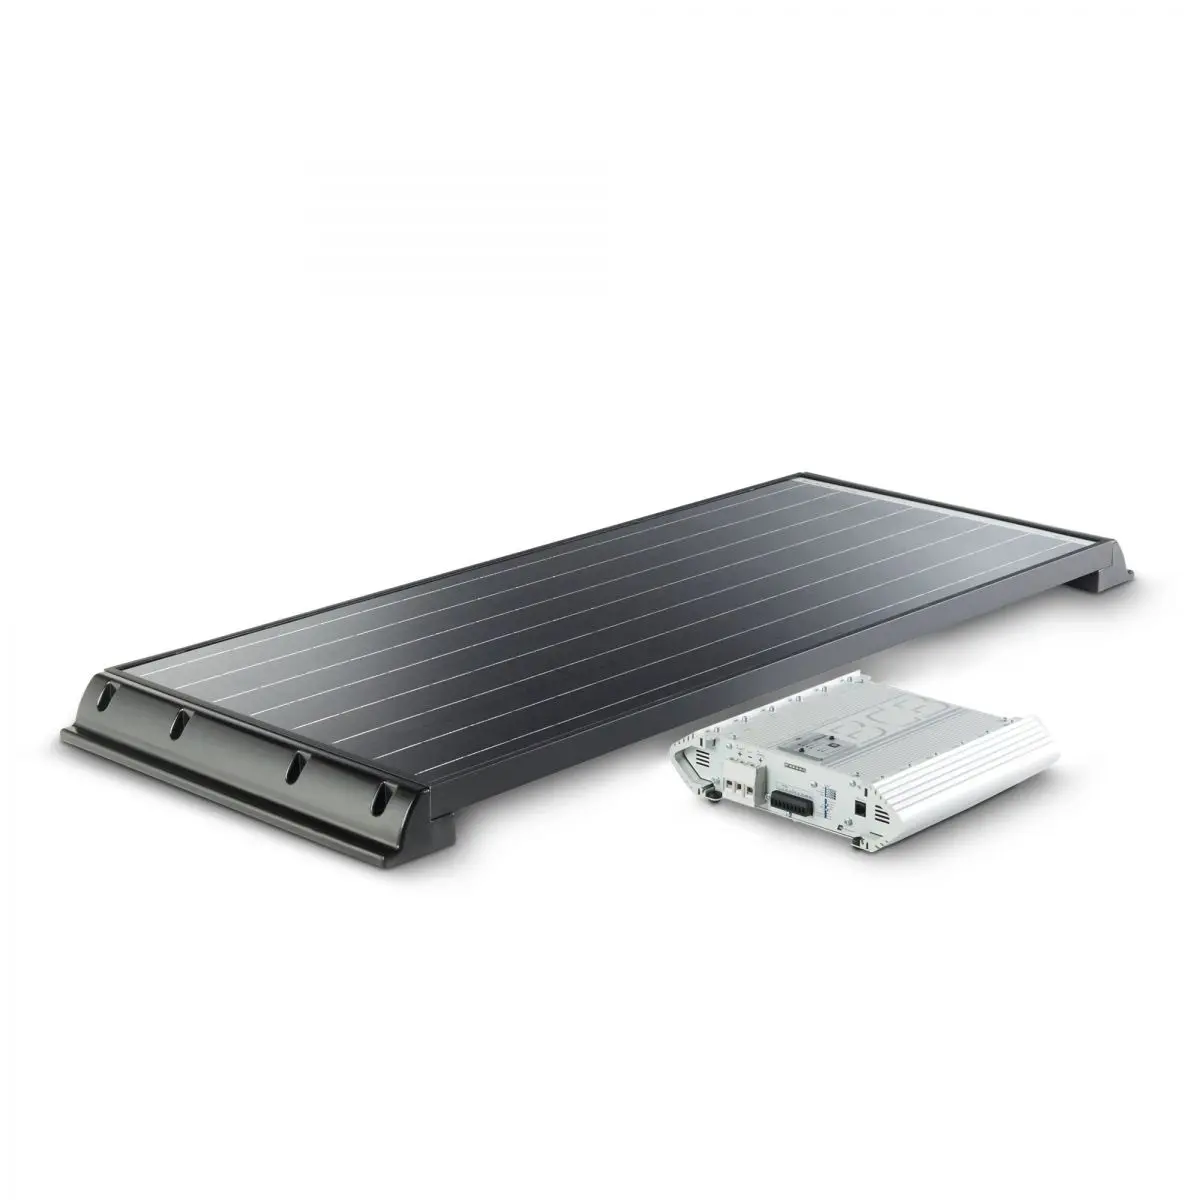 Kompletný solárny systém PowerPack Classic Power - so 110 W